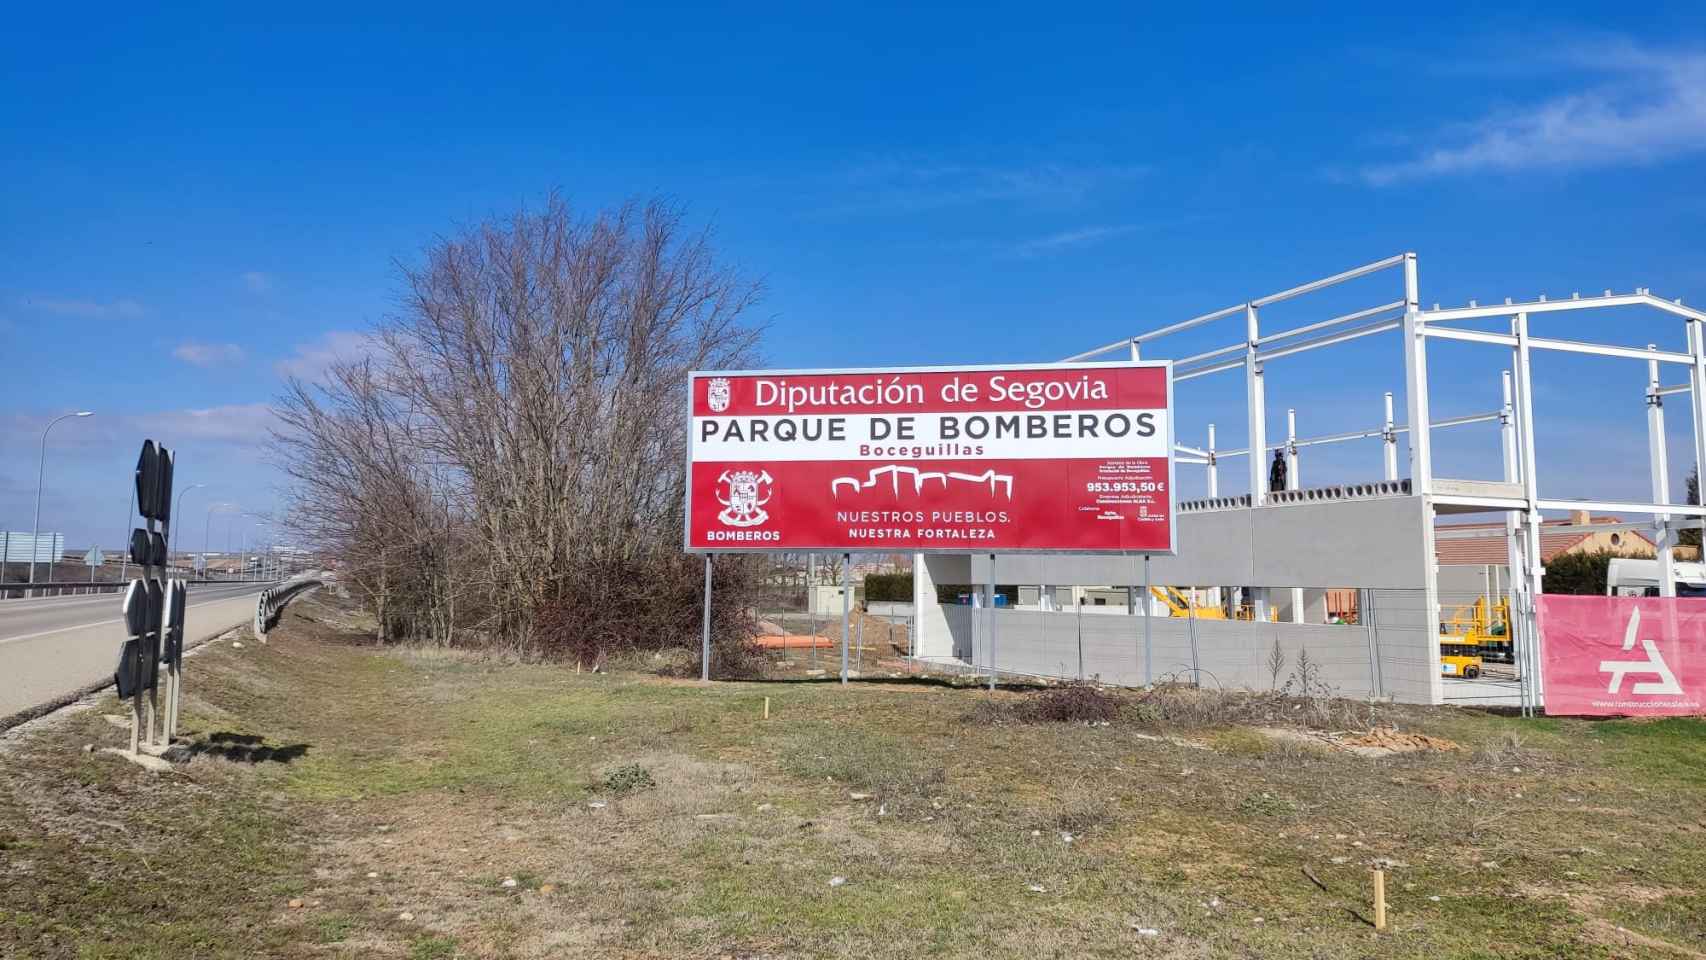 Los dos nuevos parques de bomberos de la provincia de Segovia continúan con su evolución